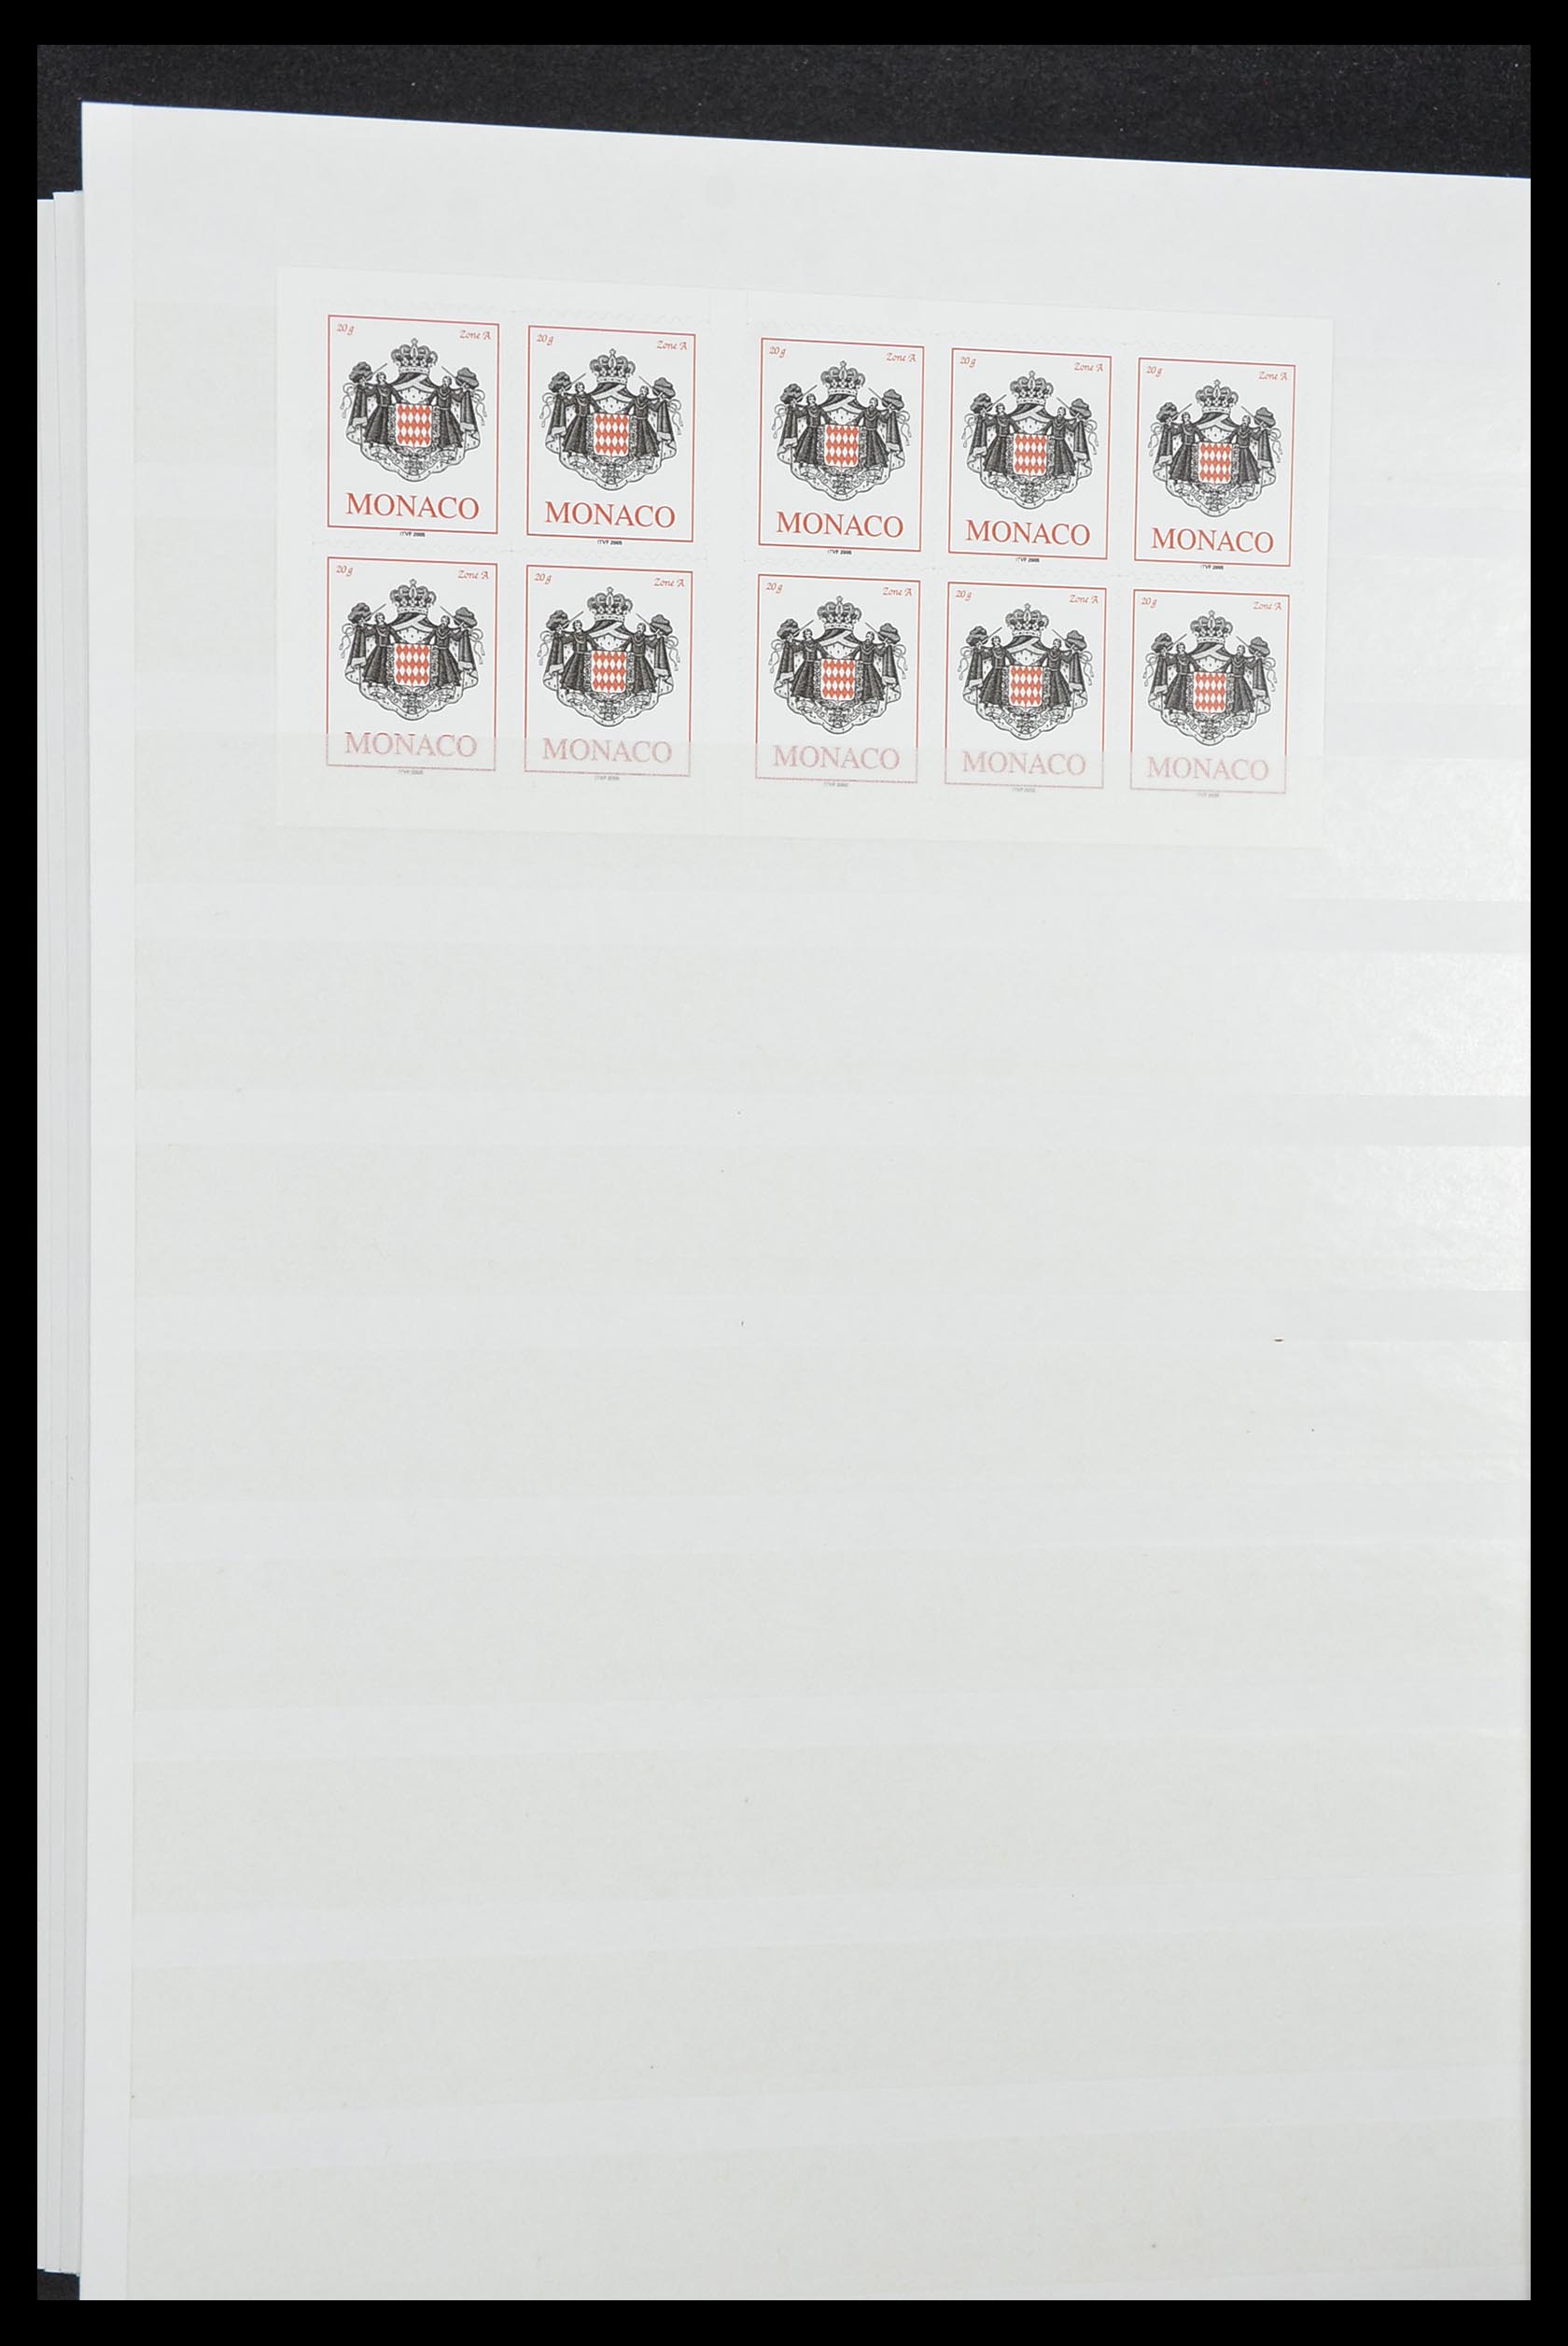 33833 044 - Stamp collection 33833 Monaco souvenir sheets 1979-2015.